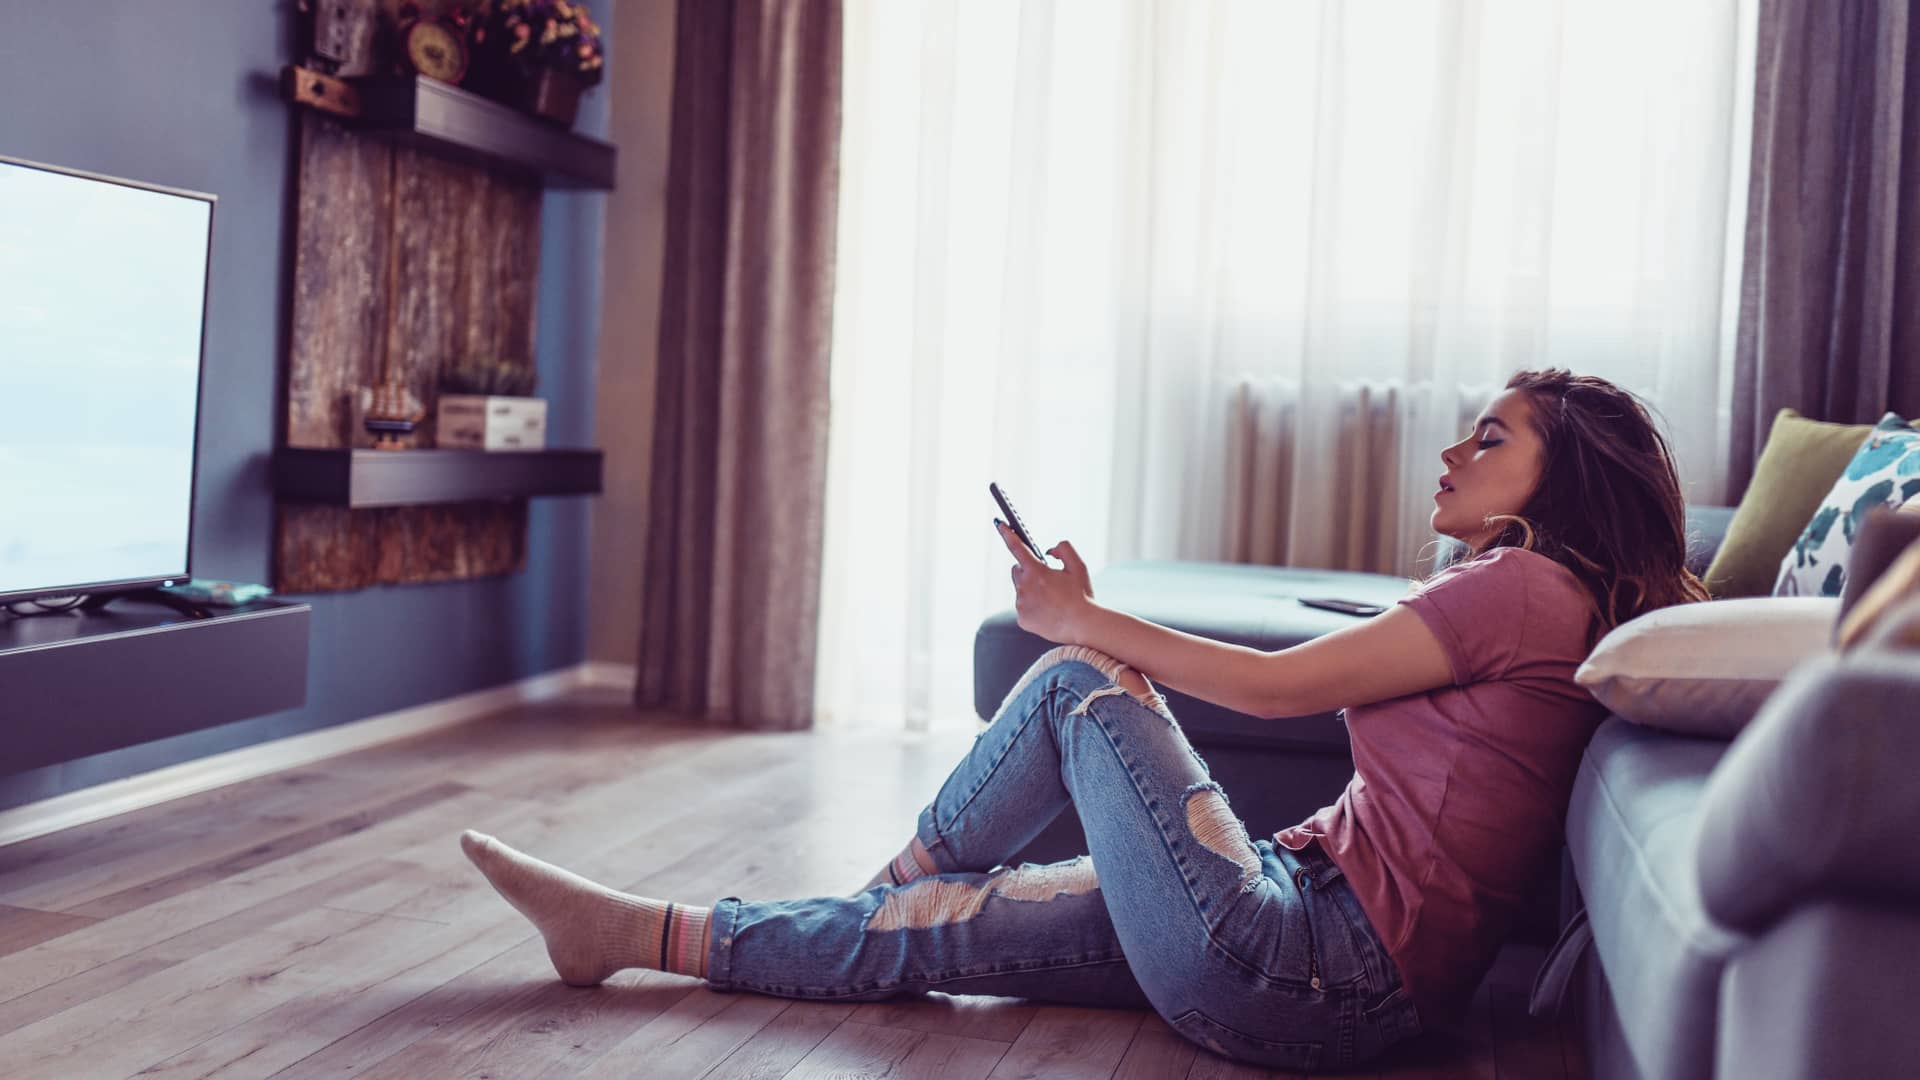 Mujer joven sentada en el suelo cambiando de canal en su smart tv, disfruta de una tarifa de pepephone de móvil y televisión